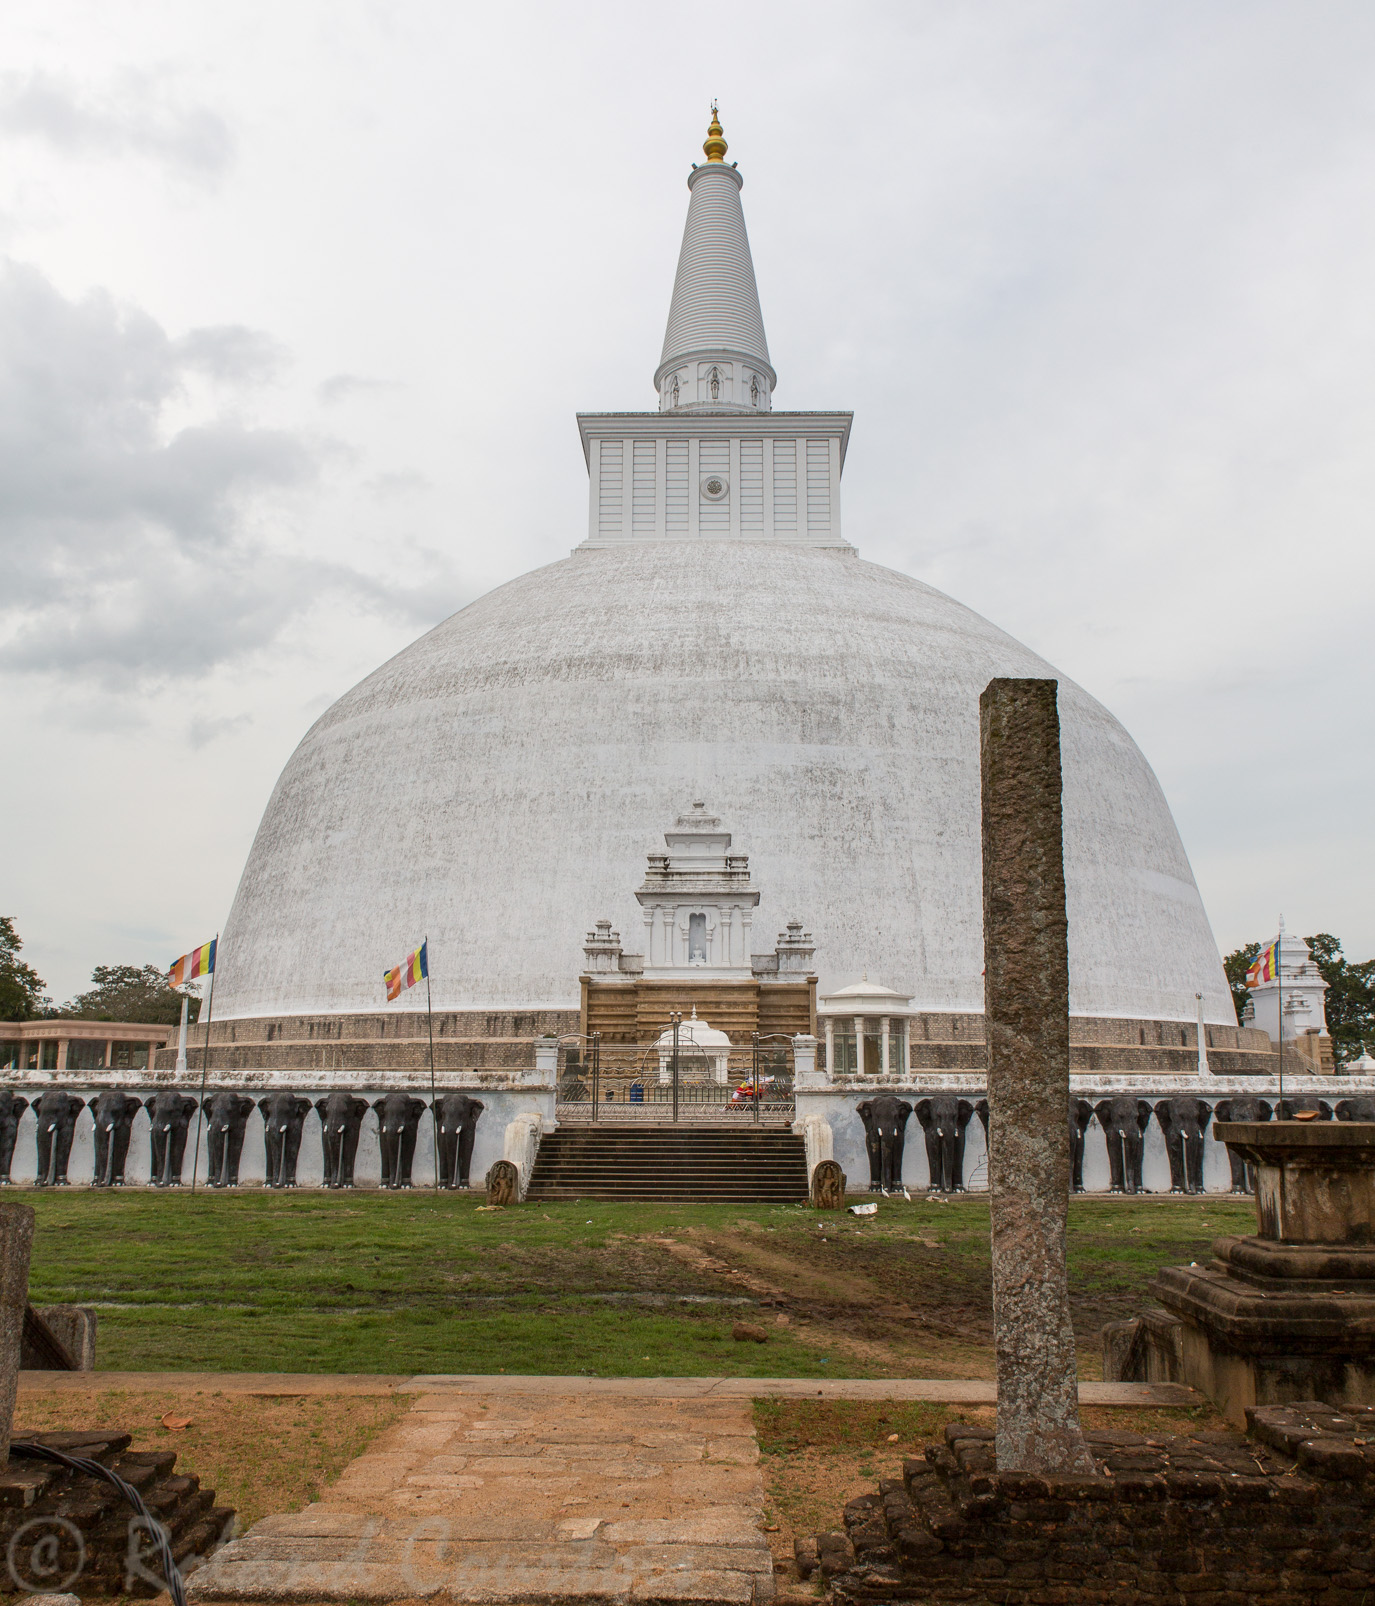 Anuradhapura. Le Stupa Ruwanwelisaya tout blanc et haut de 55 m. est cerné d'un mur orné d'une frise de centaines d'éléphants serrés les uns contre les autres.